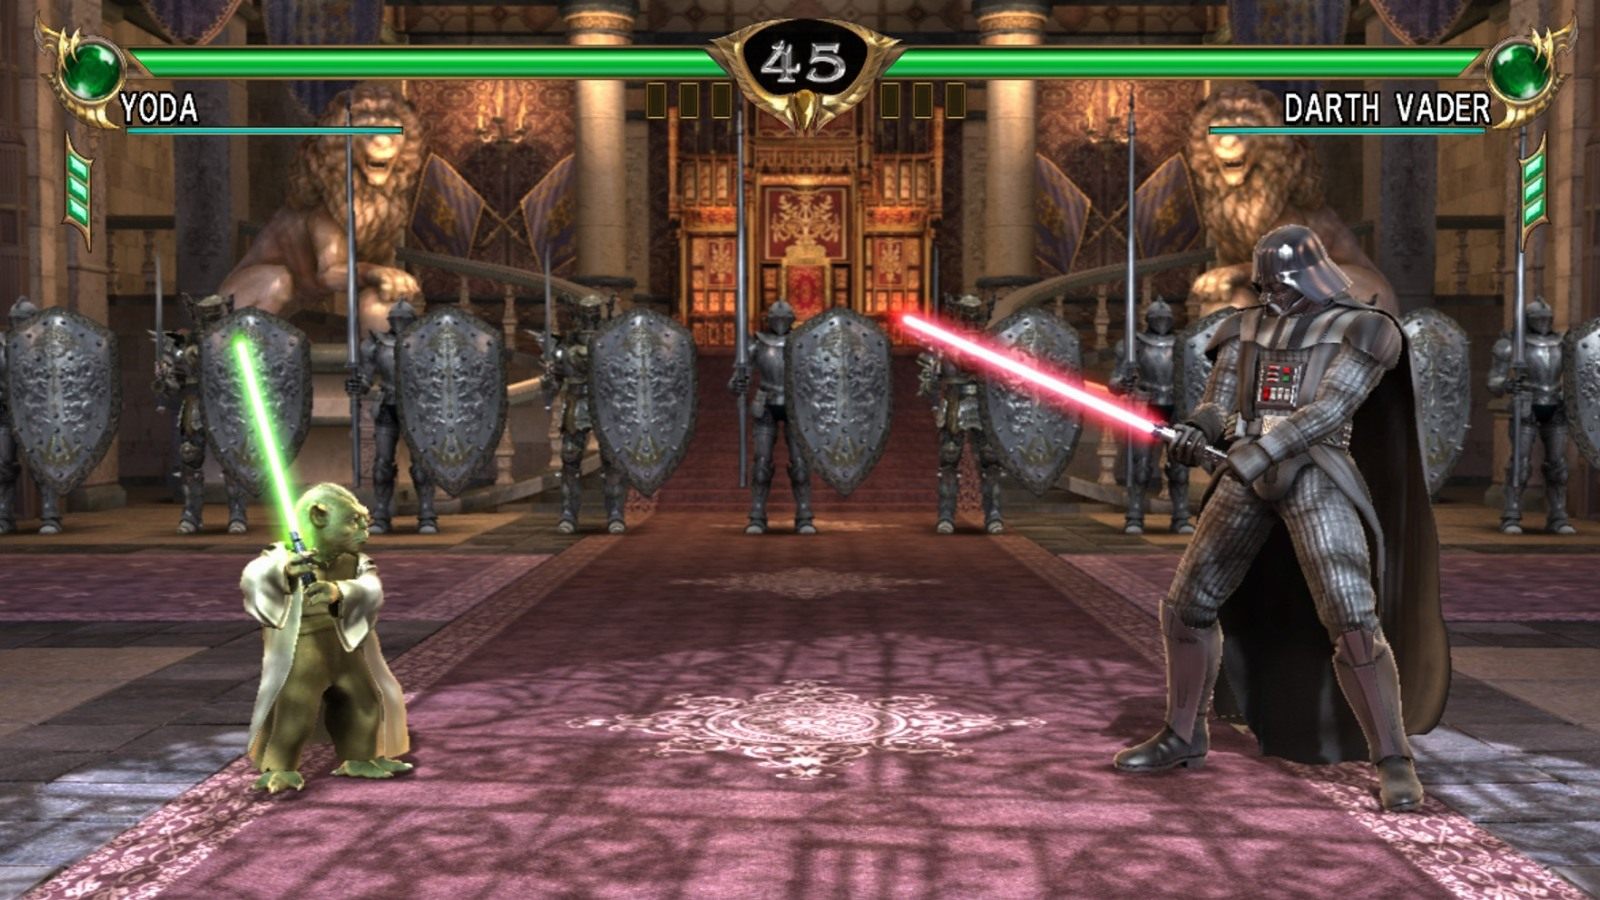 Vader tylko dla posiadaczy Playstation 3, Yoda dla właścicieli Xboksa 360. Jeśli chcesz mieć obu – płać. - 2015-02-21